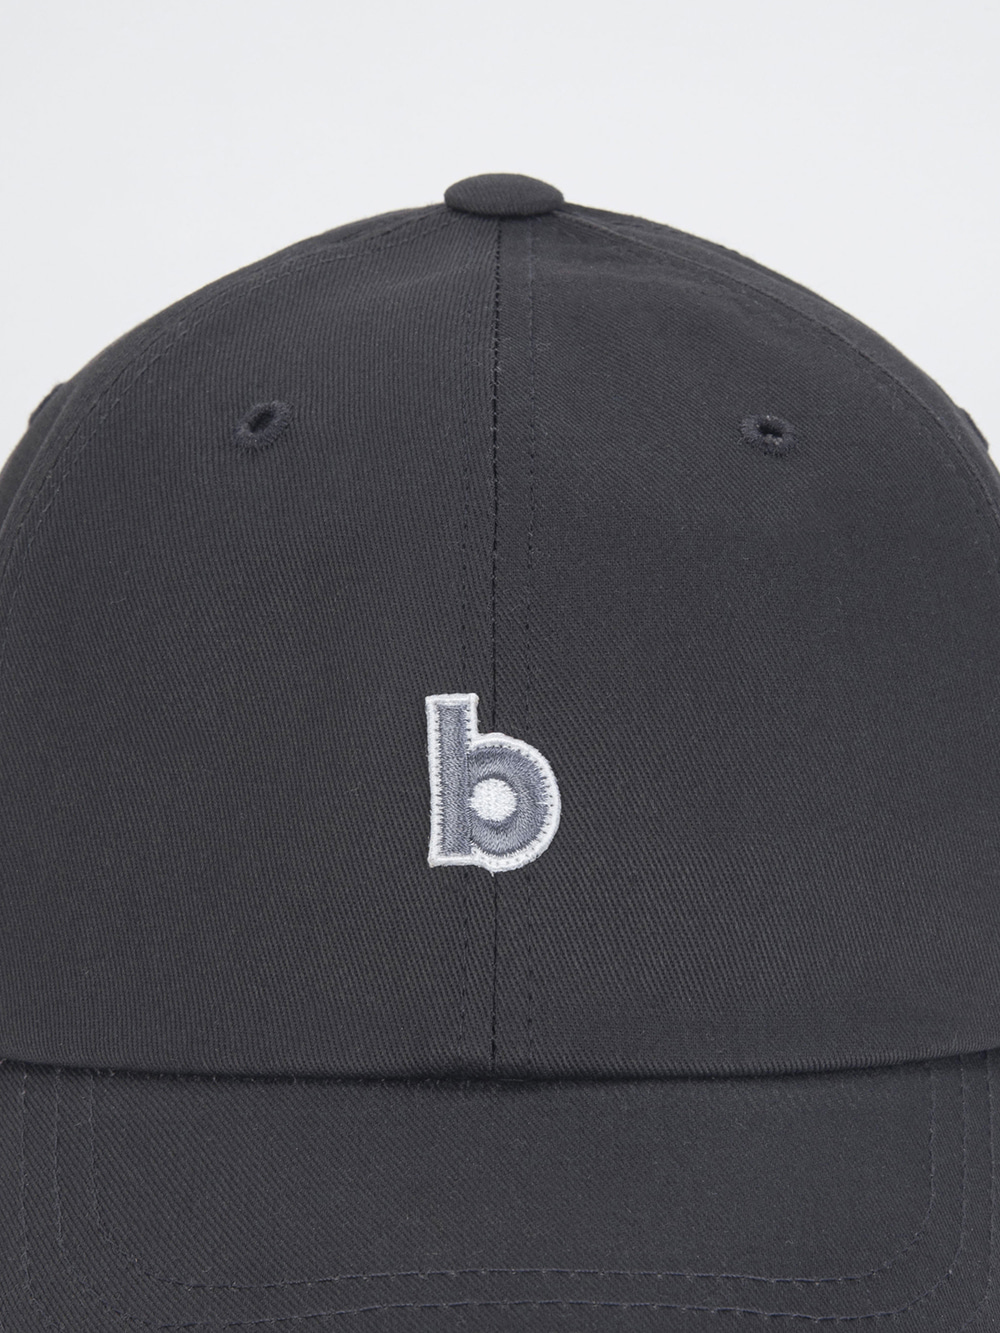 Billboard Global B logo Ball Cap_Charcoal